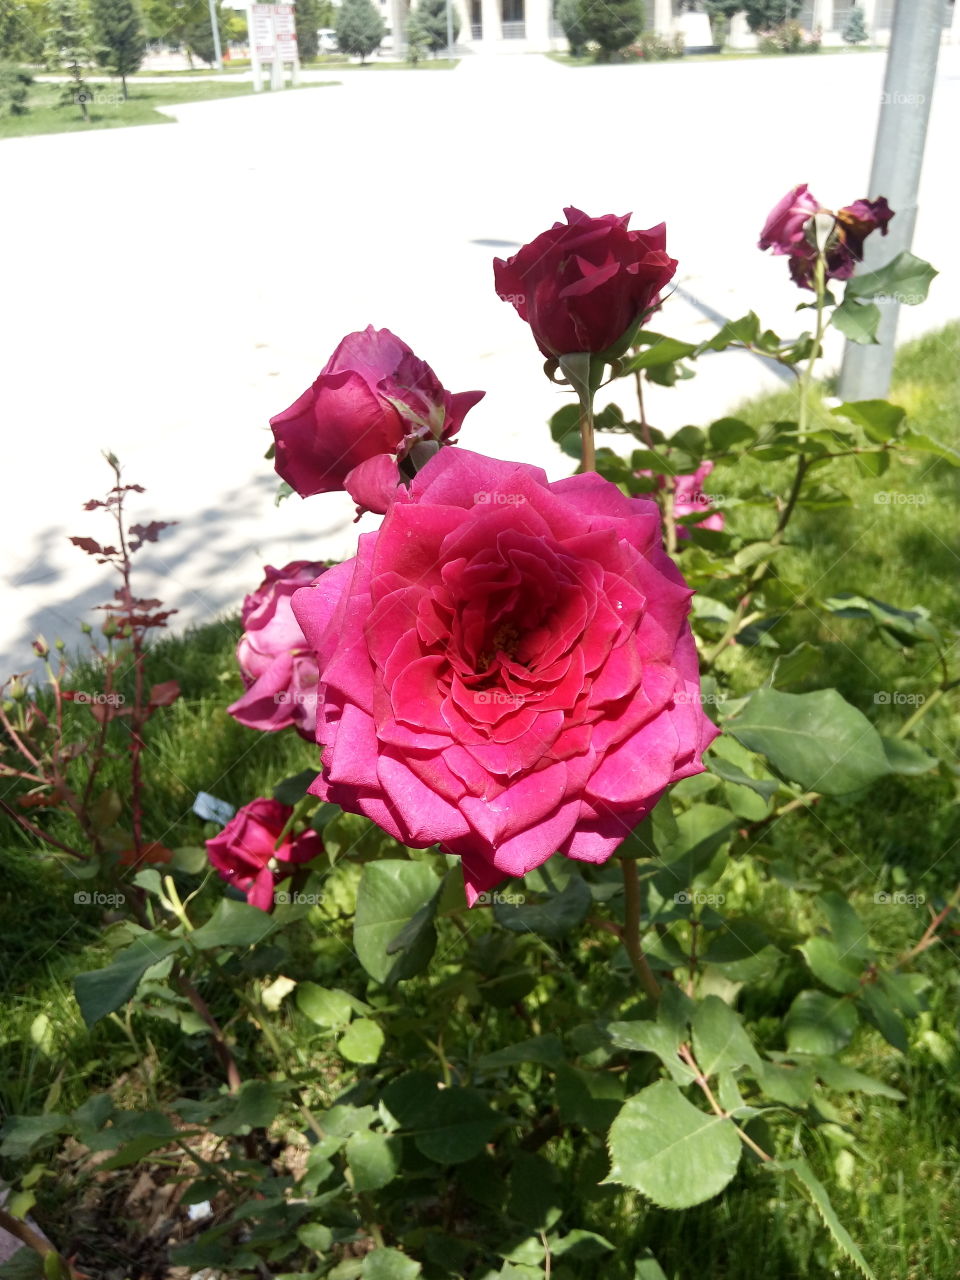 flower Sun rose